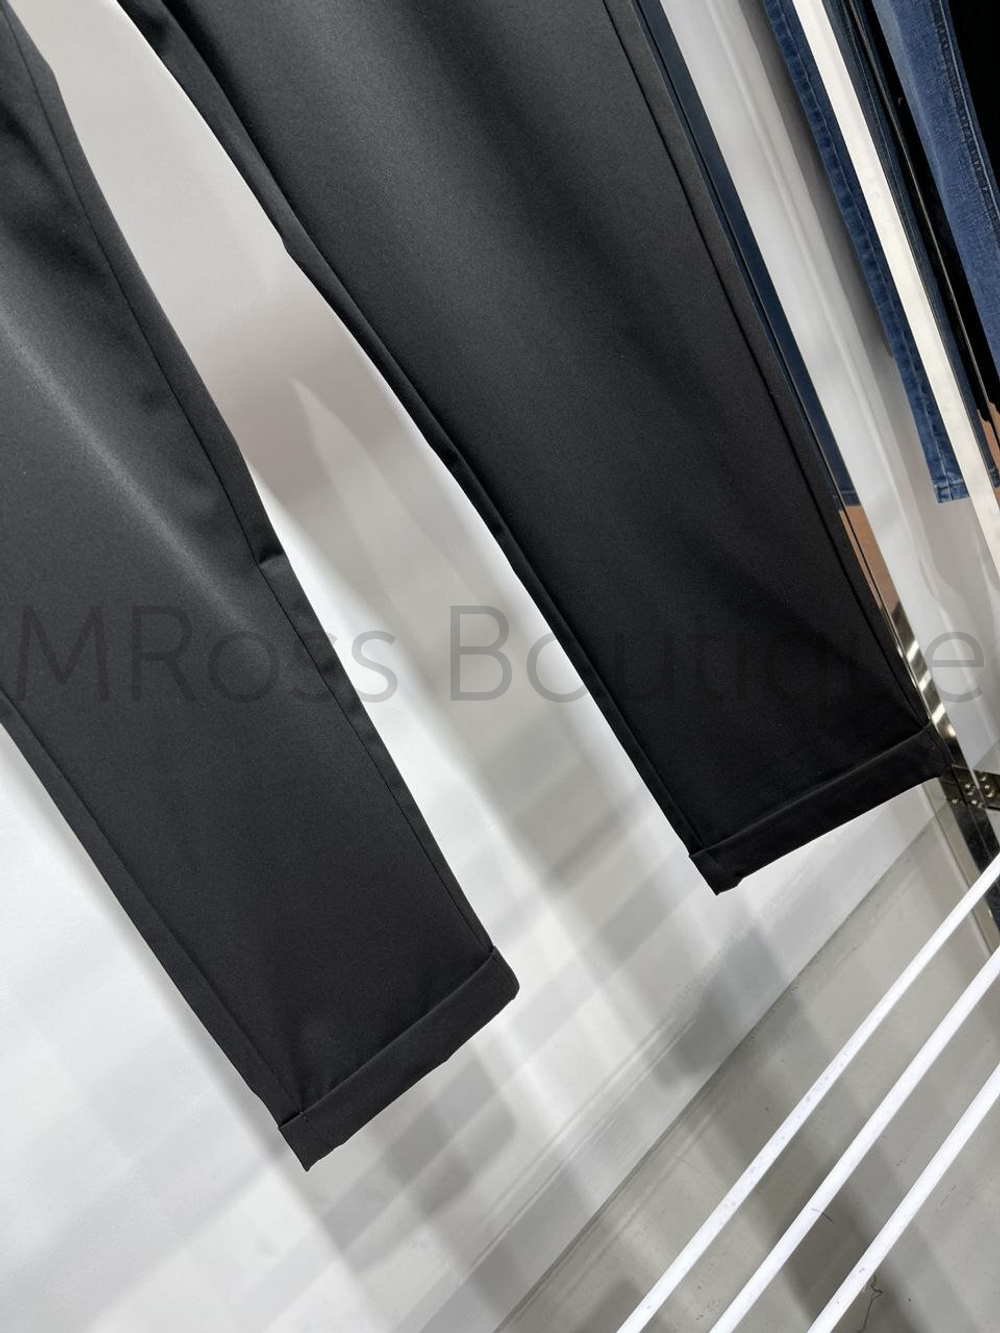 Мужские брюки чинос с отворотами Dior премиум класса